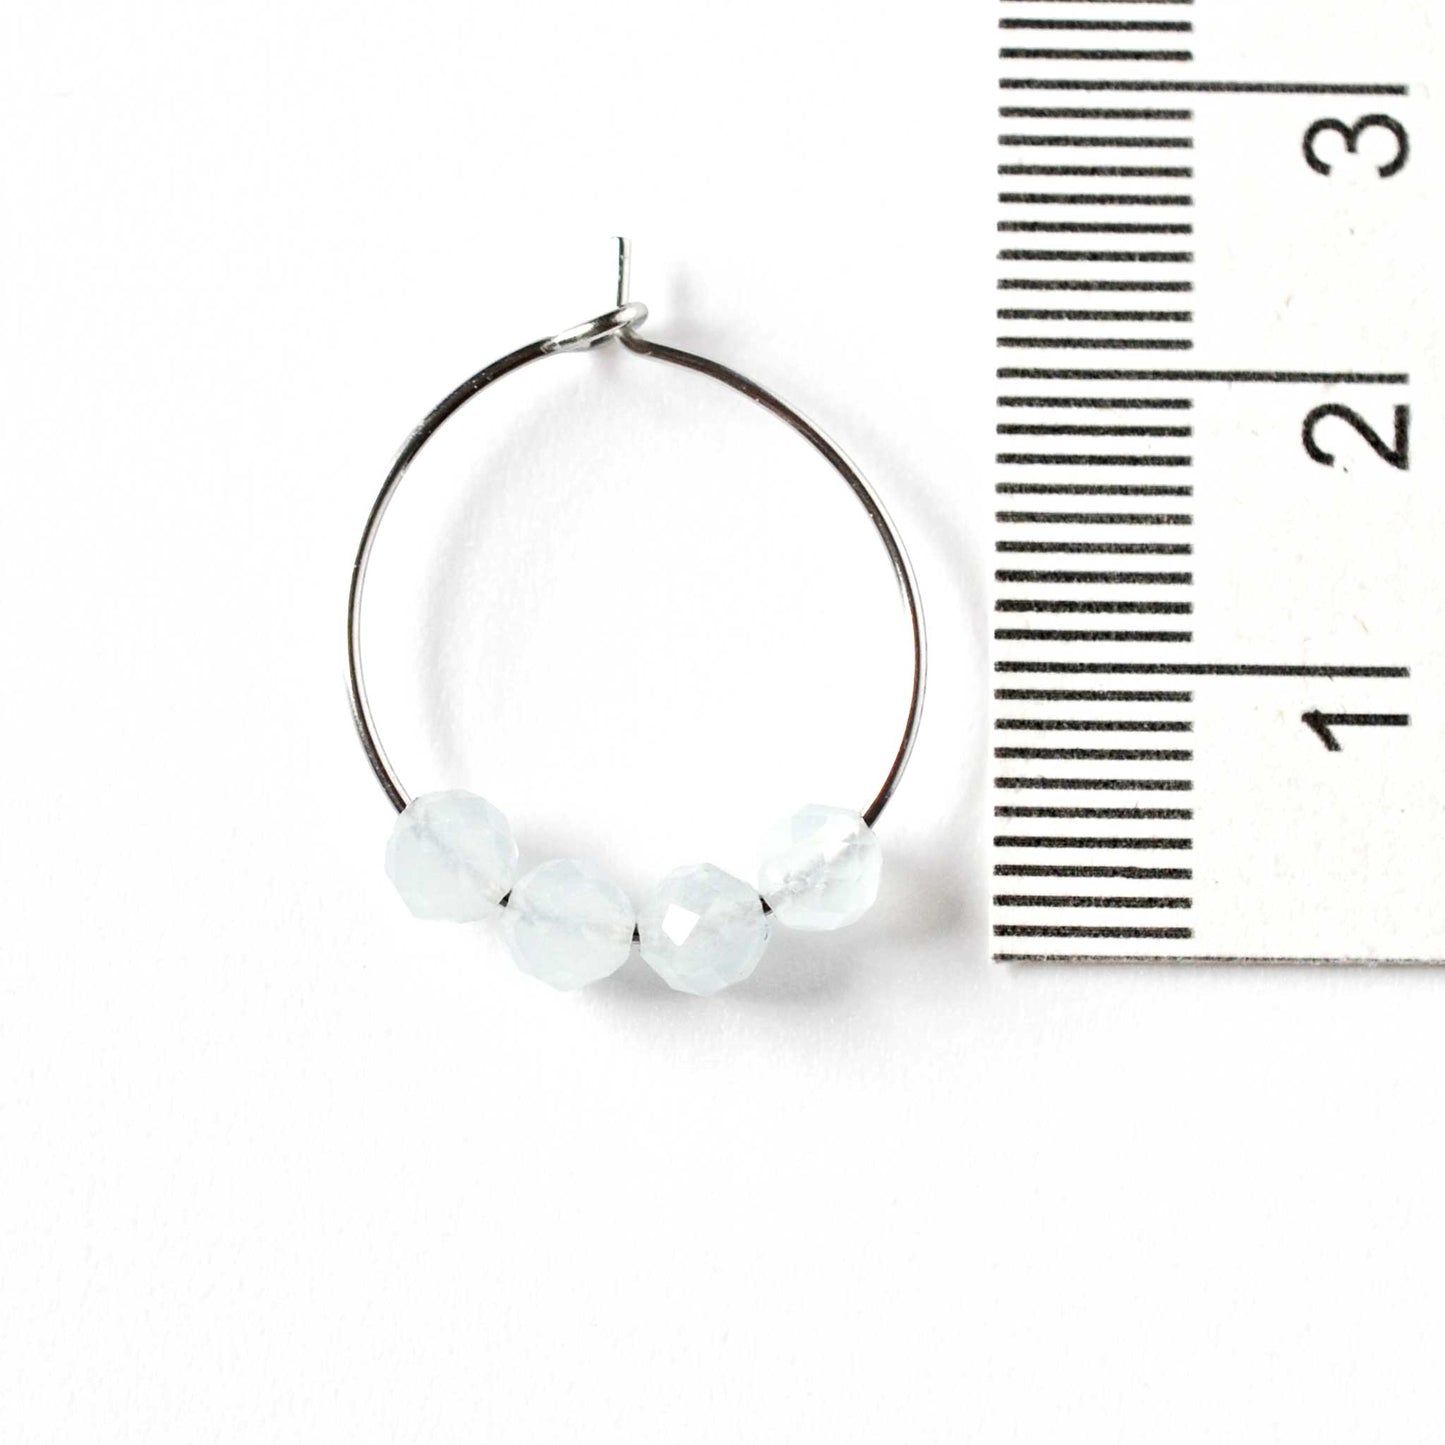 2cm diameter Aquamarine hoop earrings next to ruler